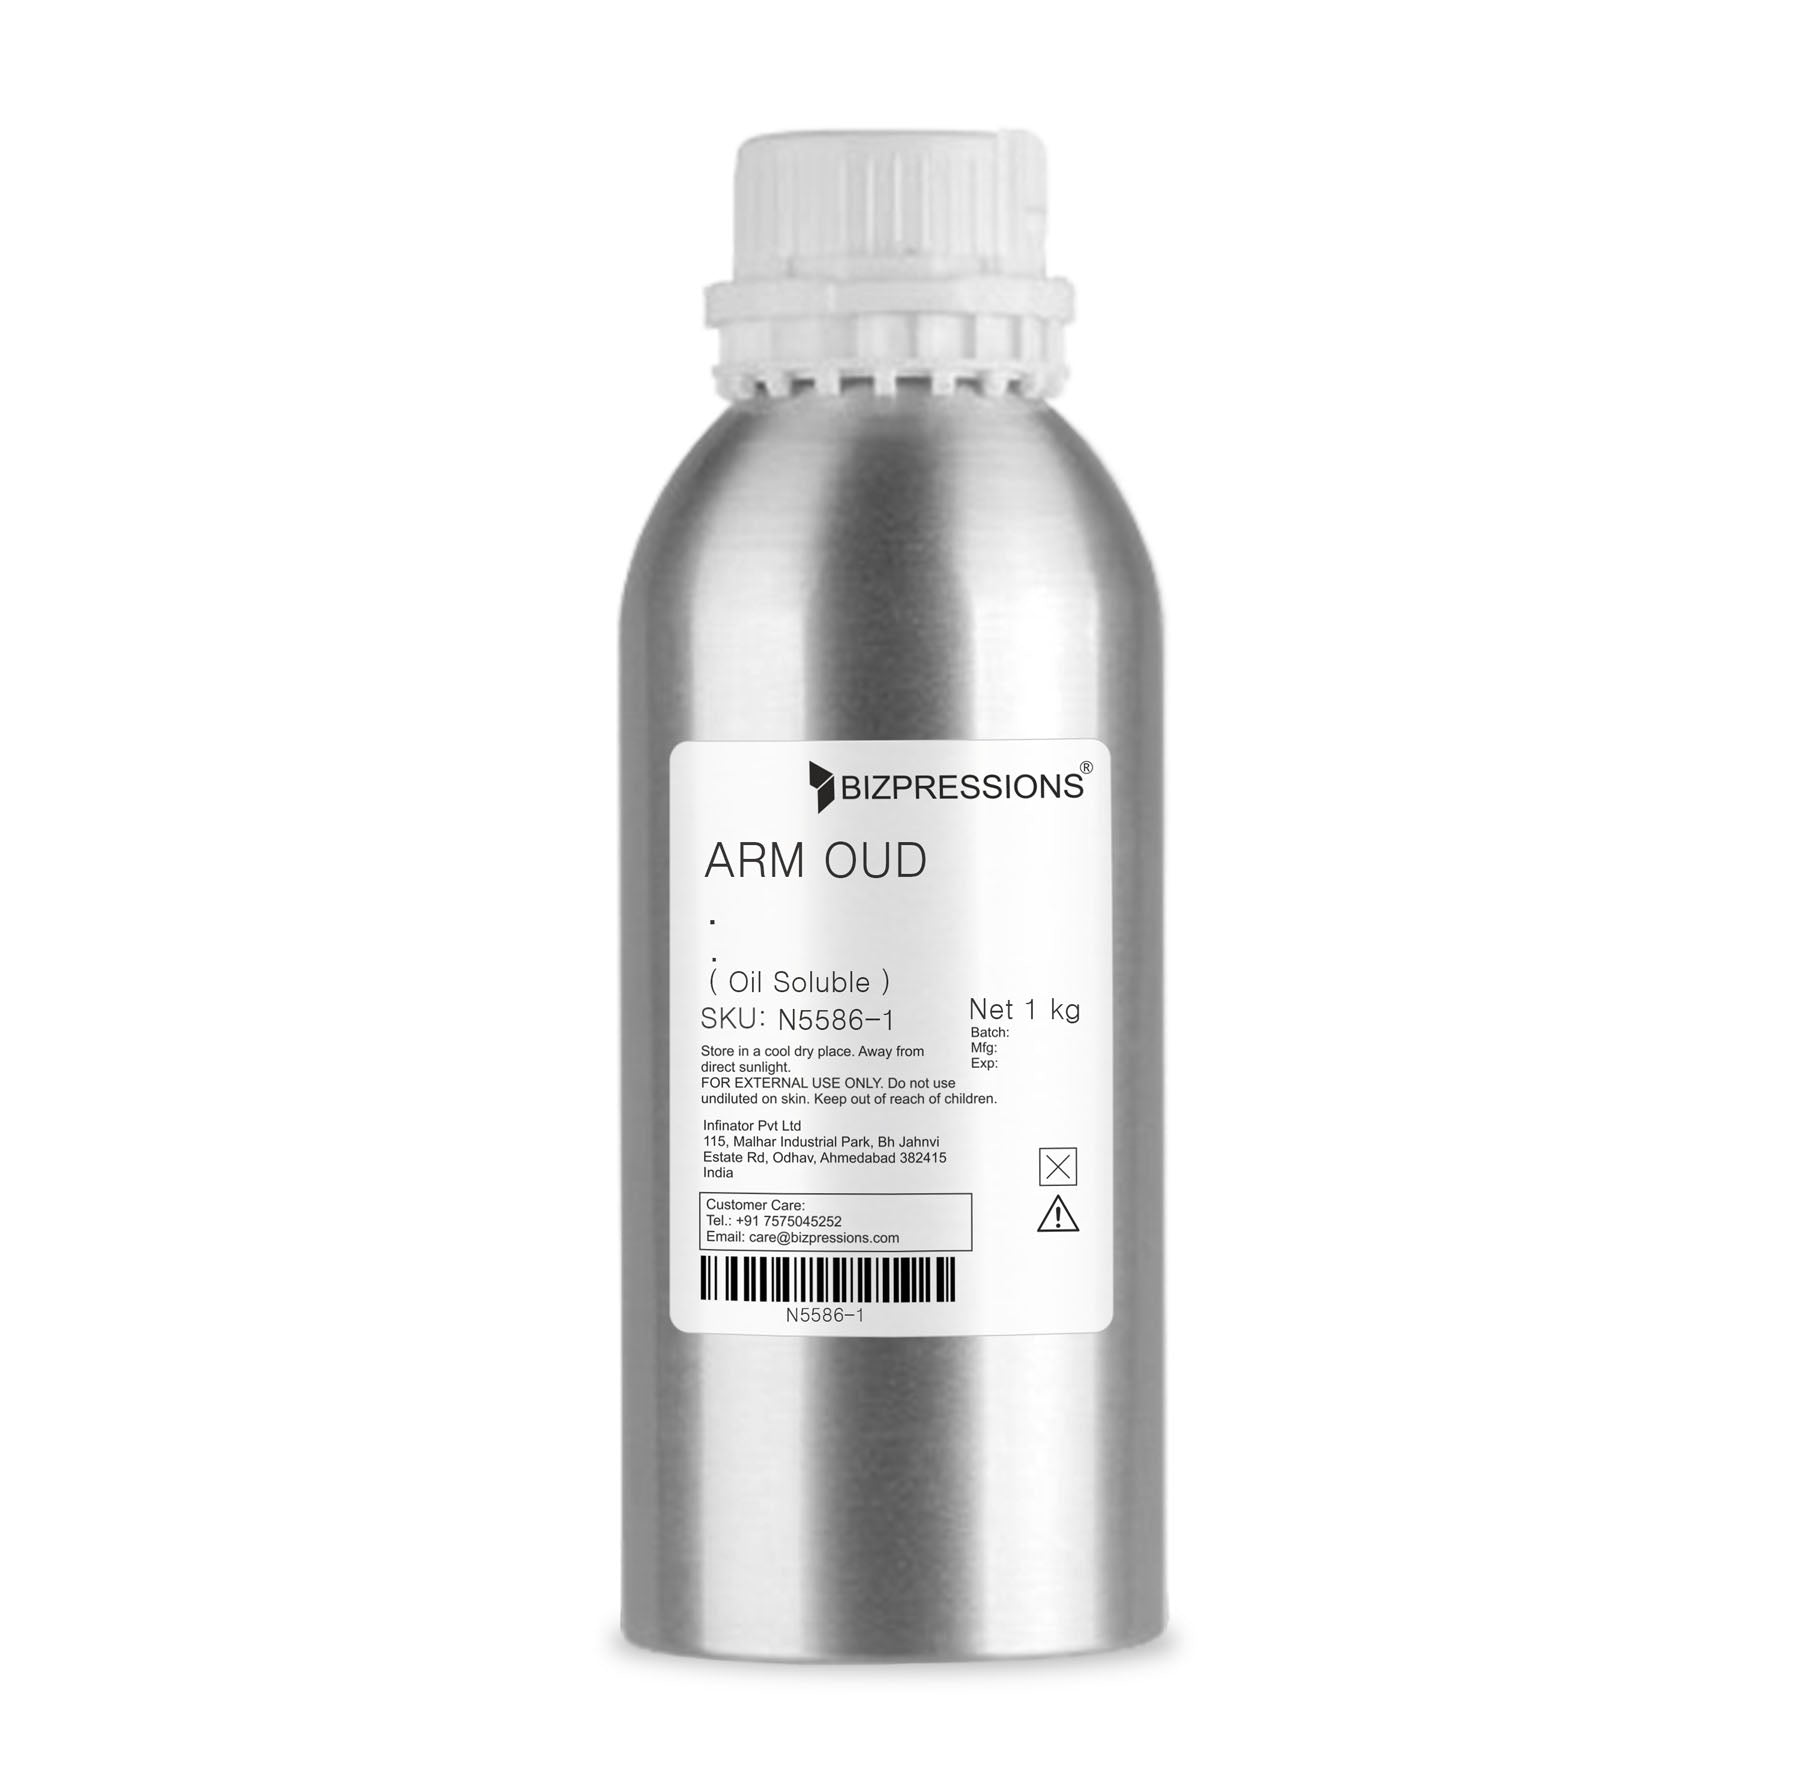 ARM OUD - Fragrance ( Oil Soluble ) - 1 kg